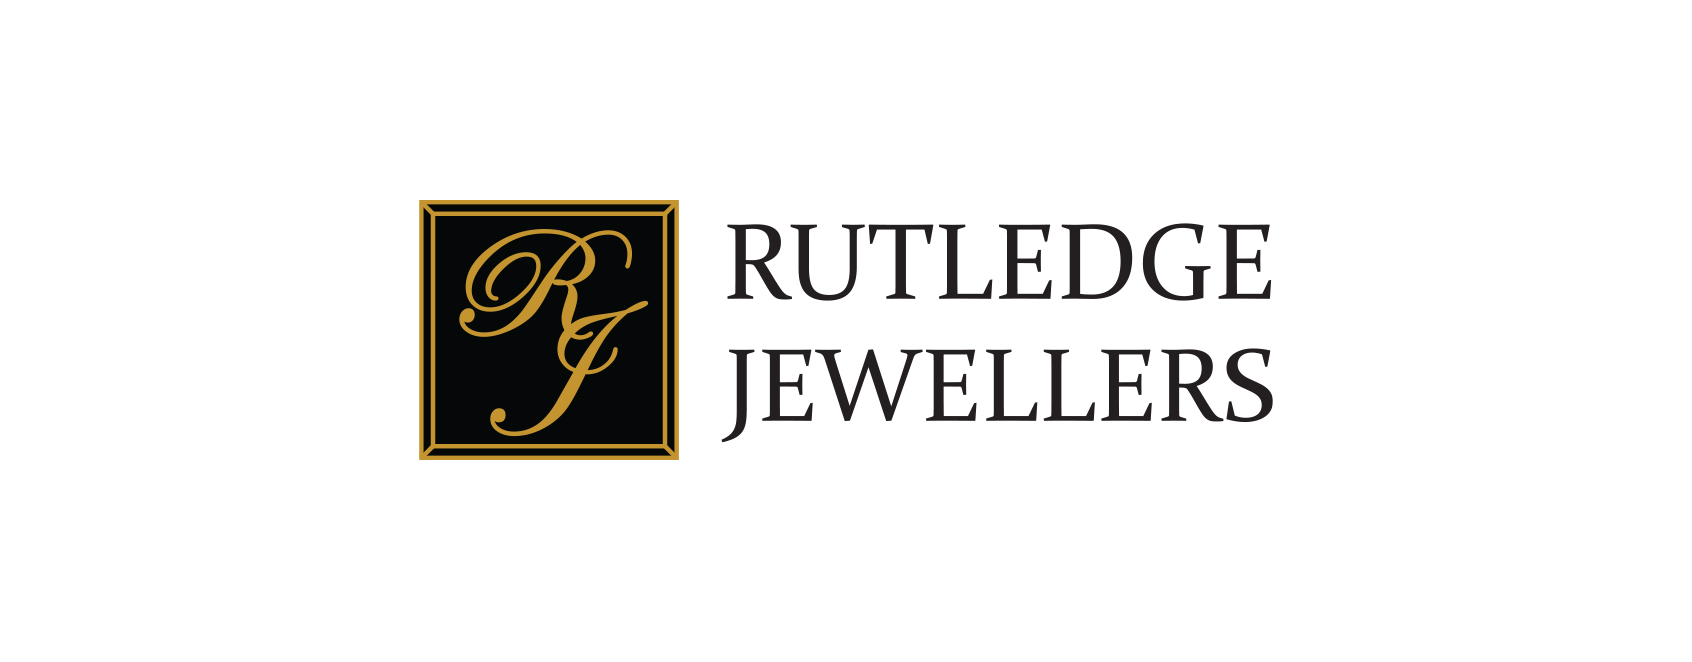 new-rutledge-jewellers-logo